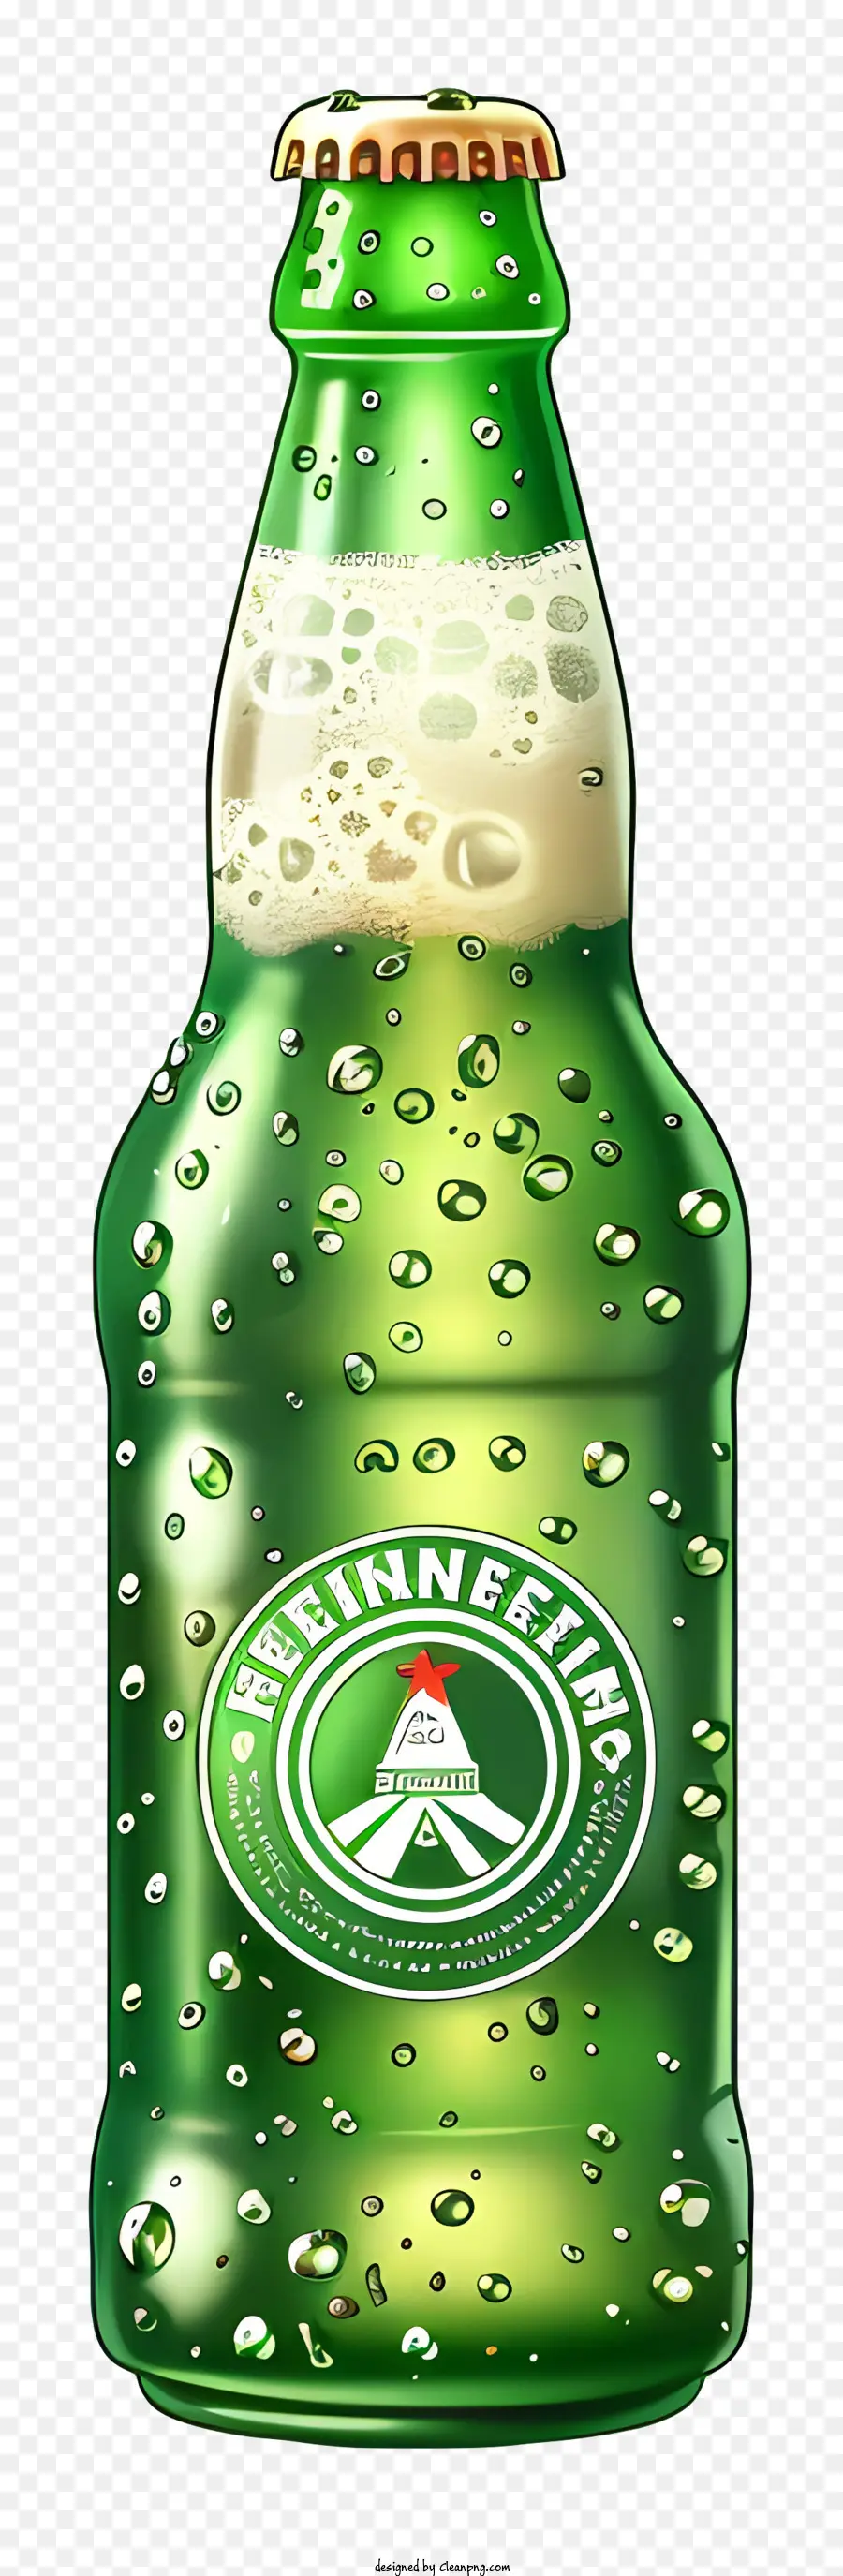 beer green beer stella artois beer bottle melon flavor